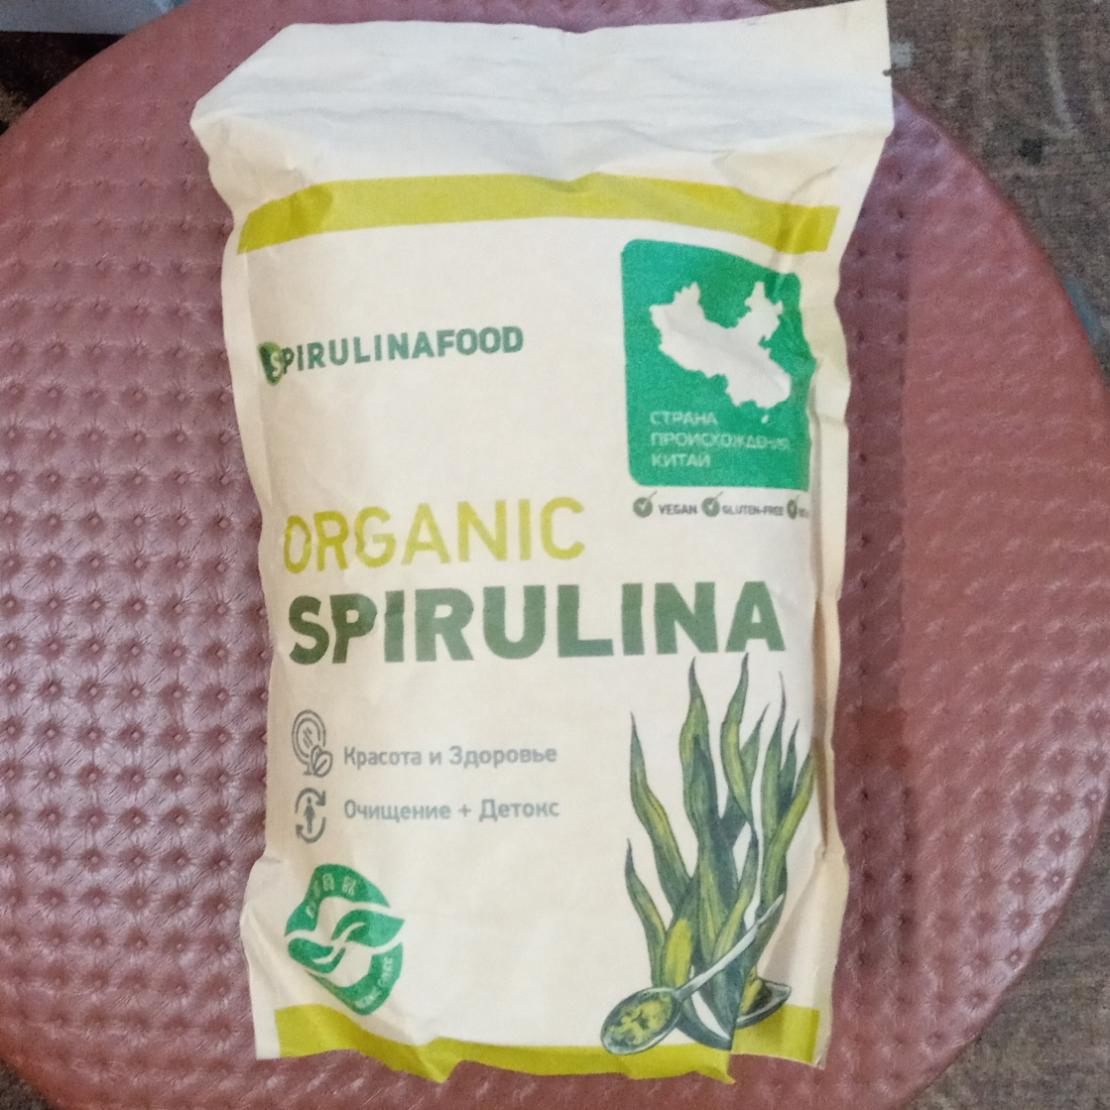 Фото - органическая спирулина Spirulinafood